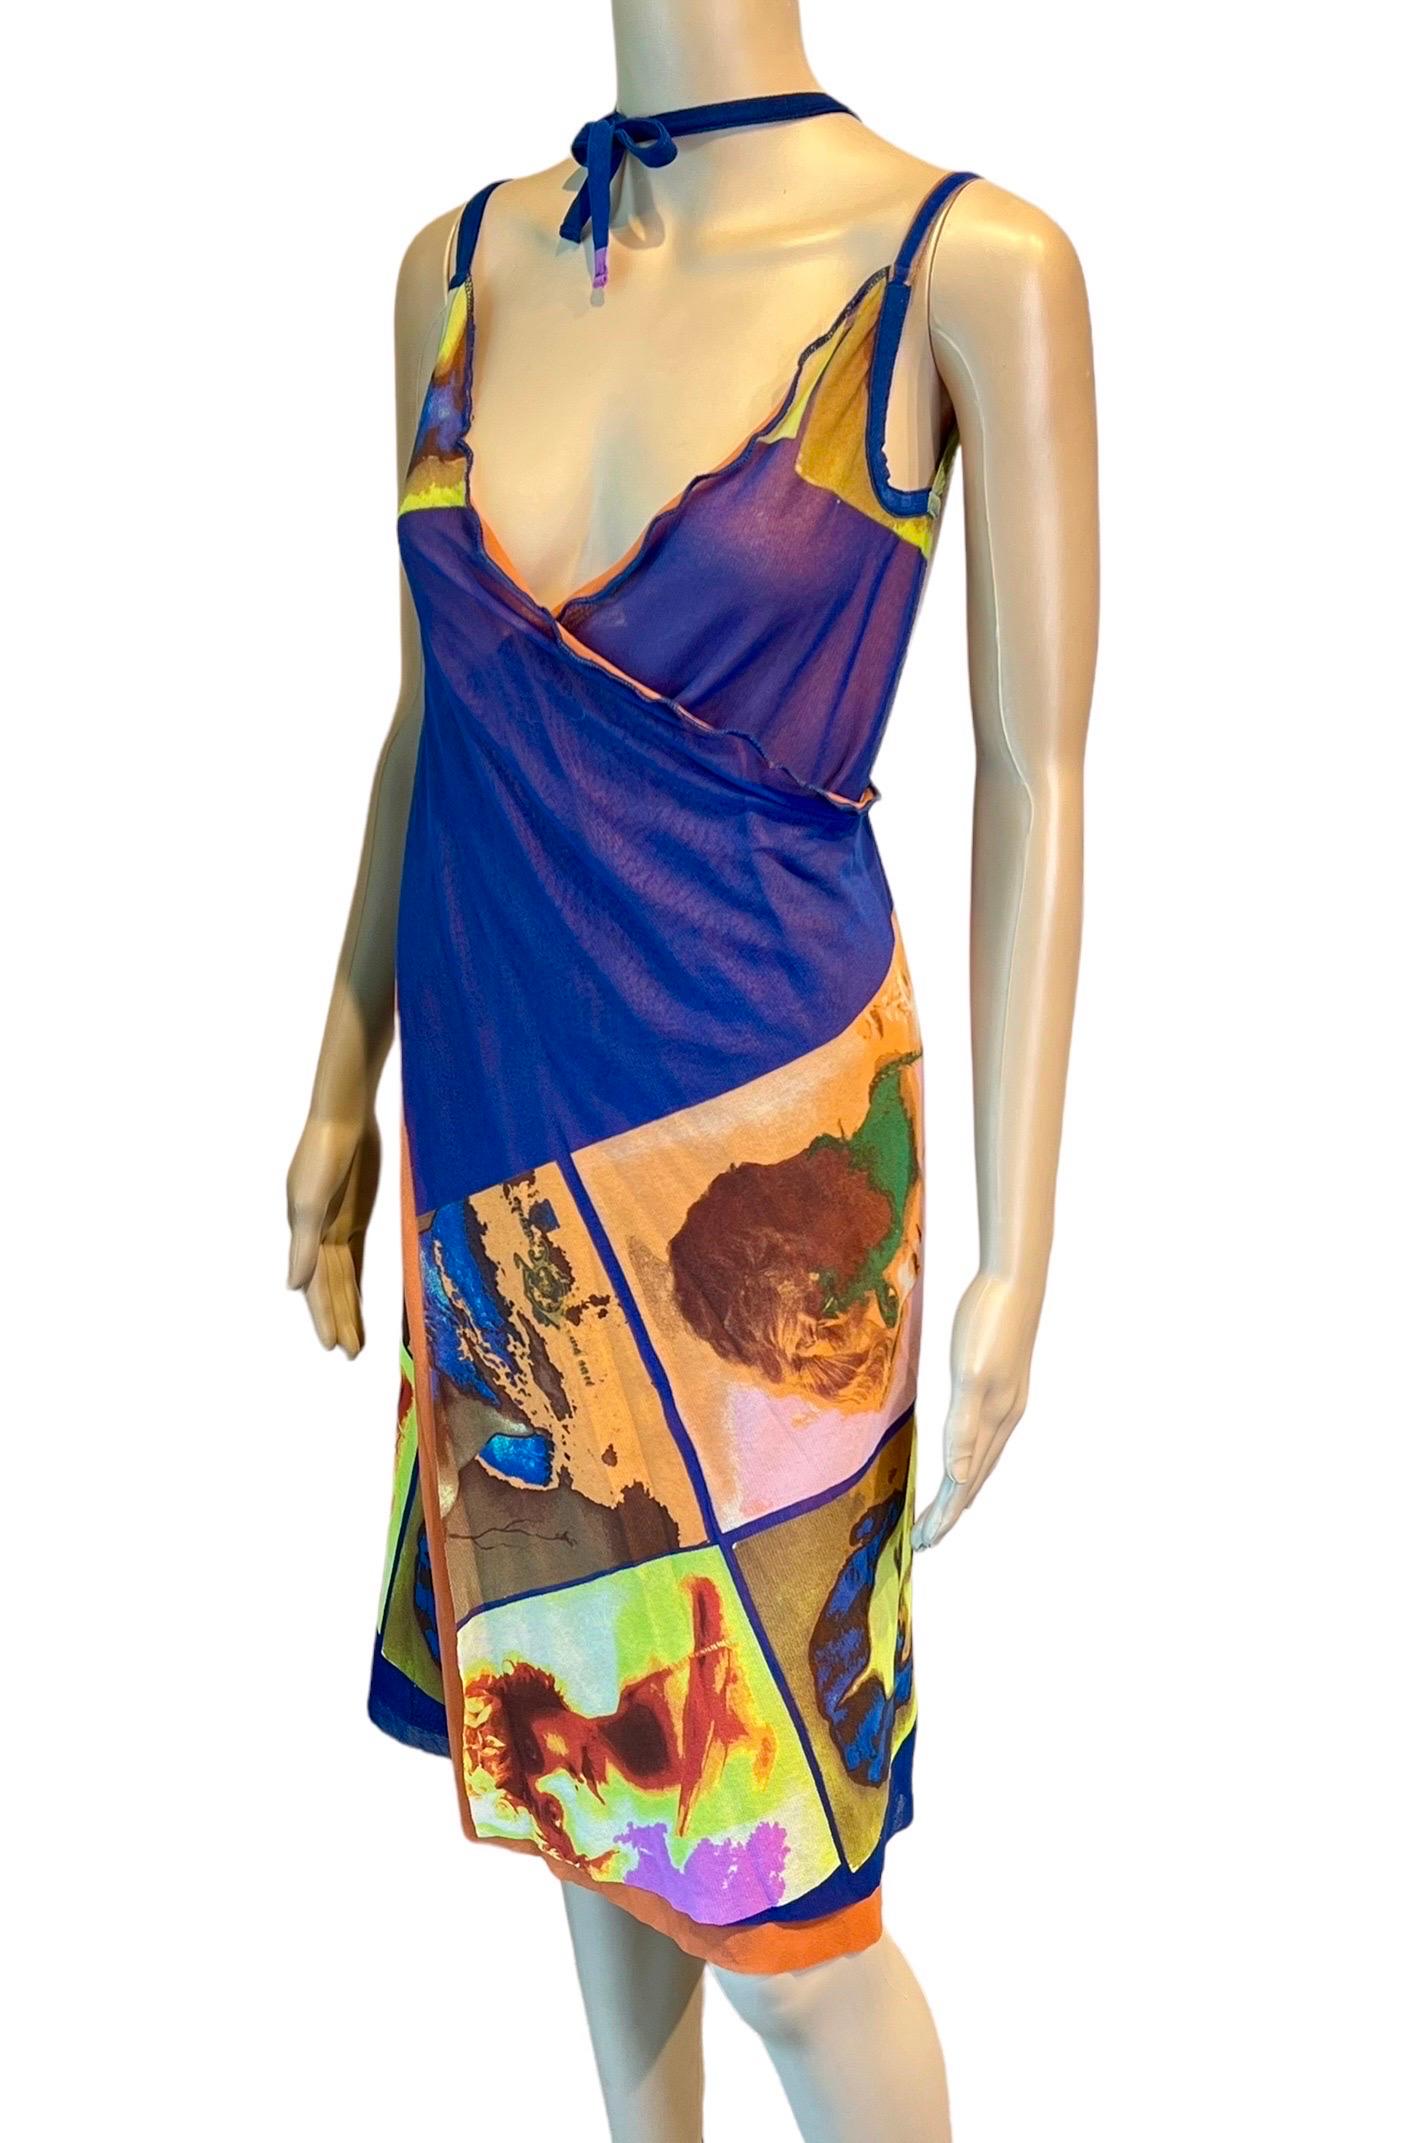 Jean Paul Gaultier Soleil S/S 2002 Vintage “Portraits” Mesh Wrap Dress  For Sale 3